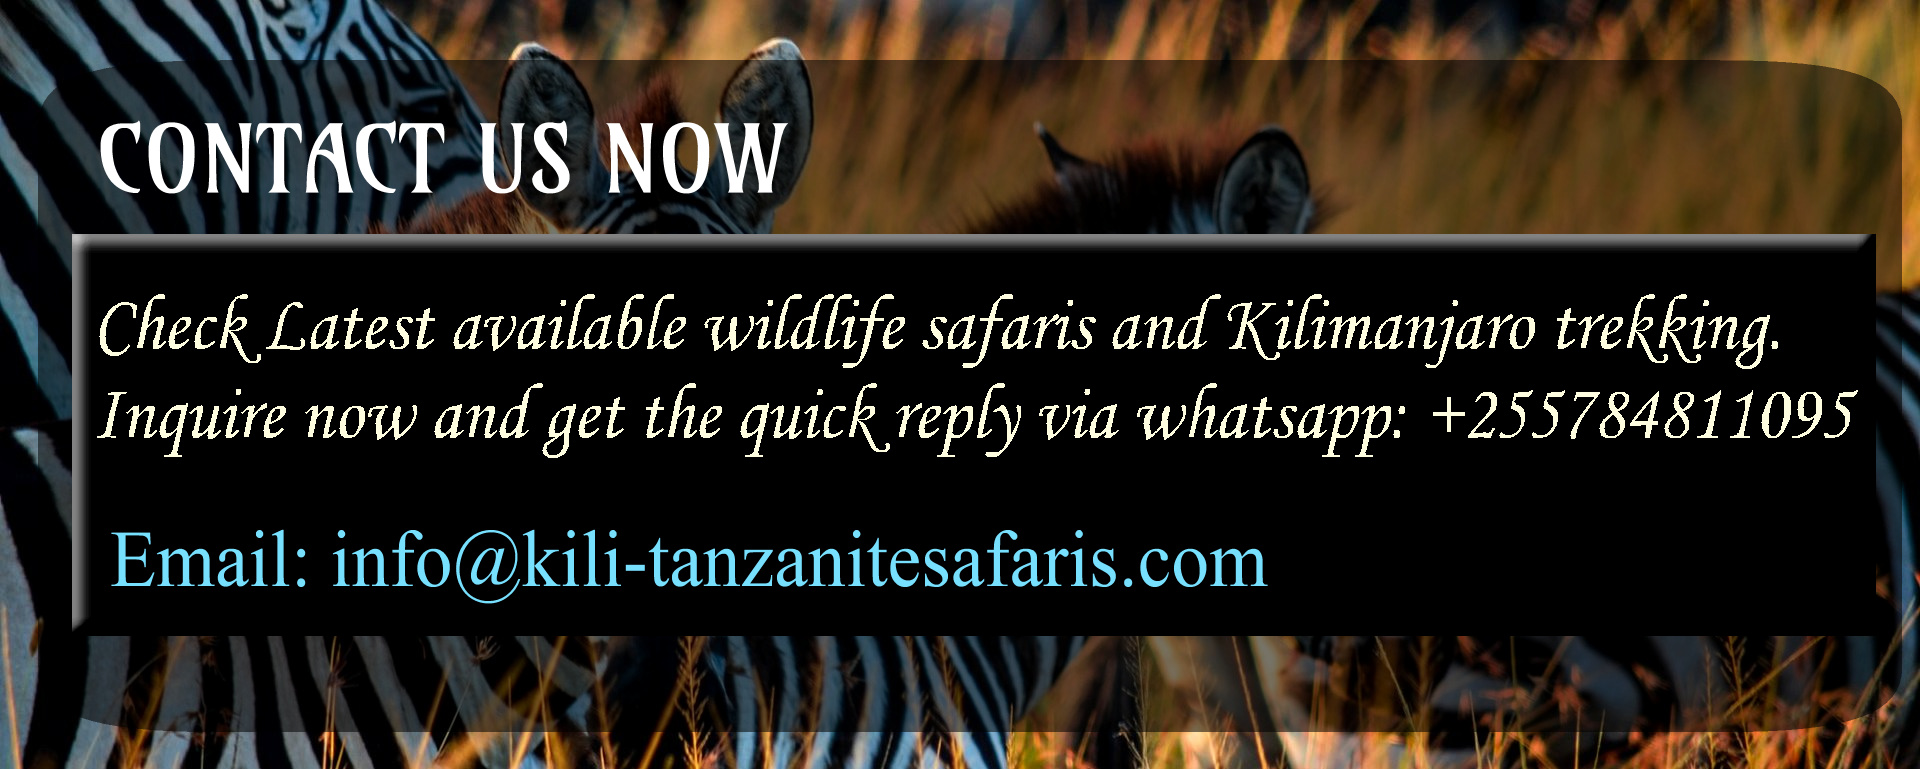 tanzania safari booking